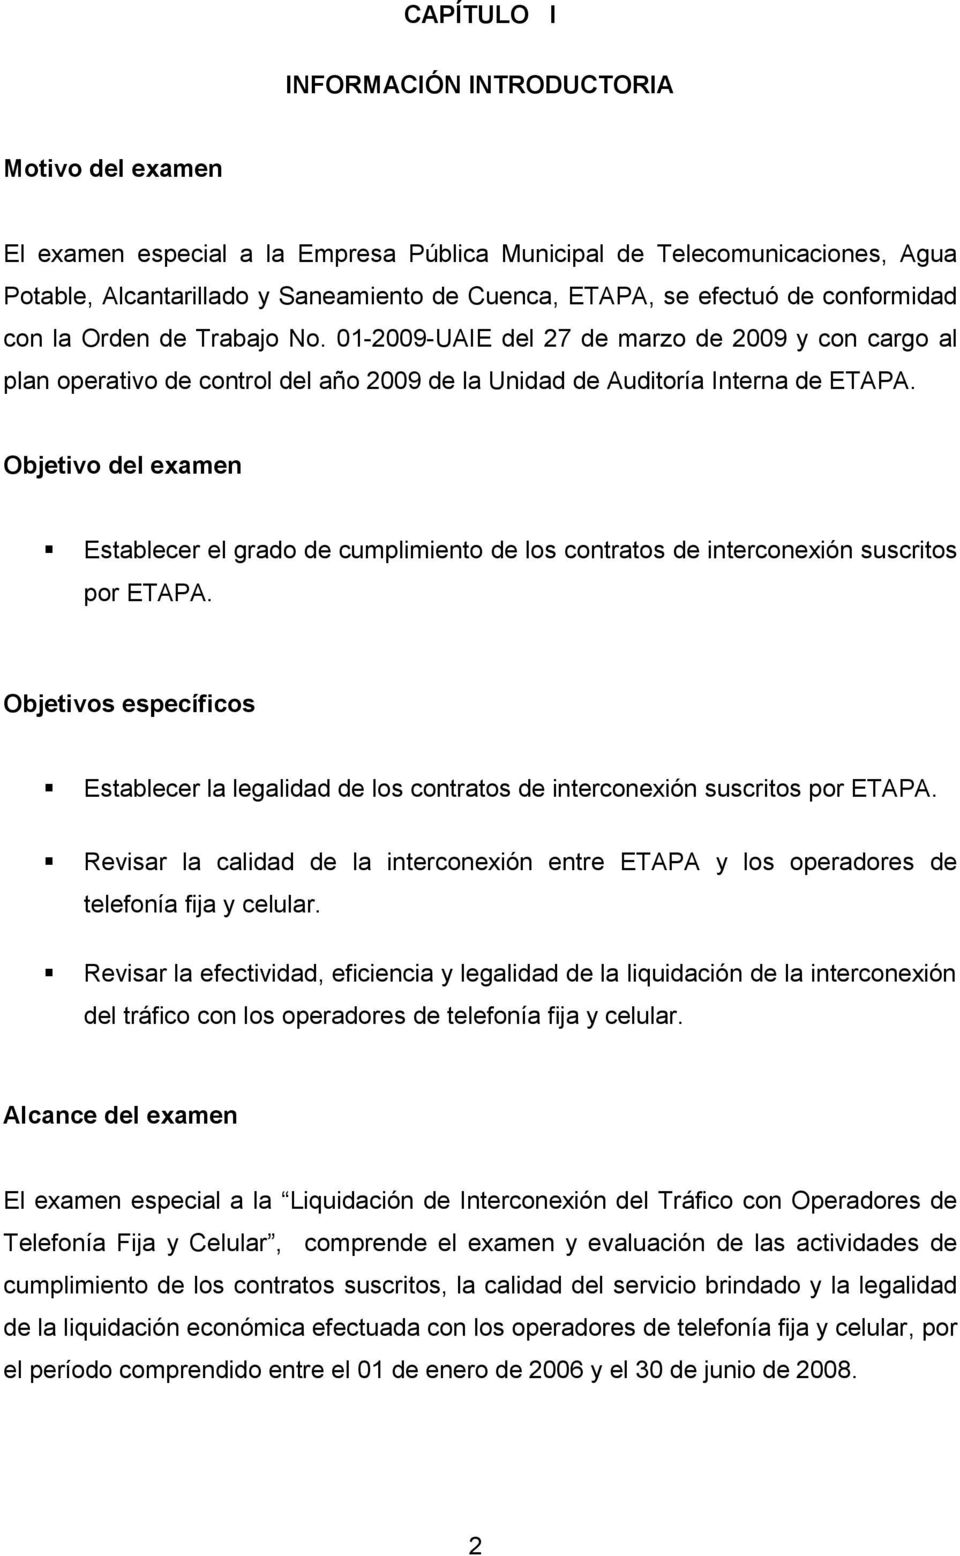 01-2009-UAIE del 27 de marzo de 2009 y con cargo al plan operativo de control del año 2009 de la Unidad de Auditoría Interna de ETAPA.